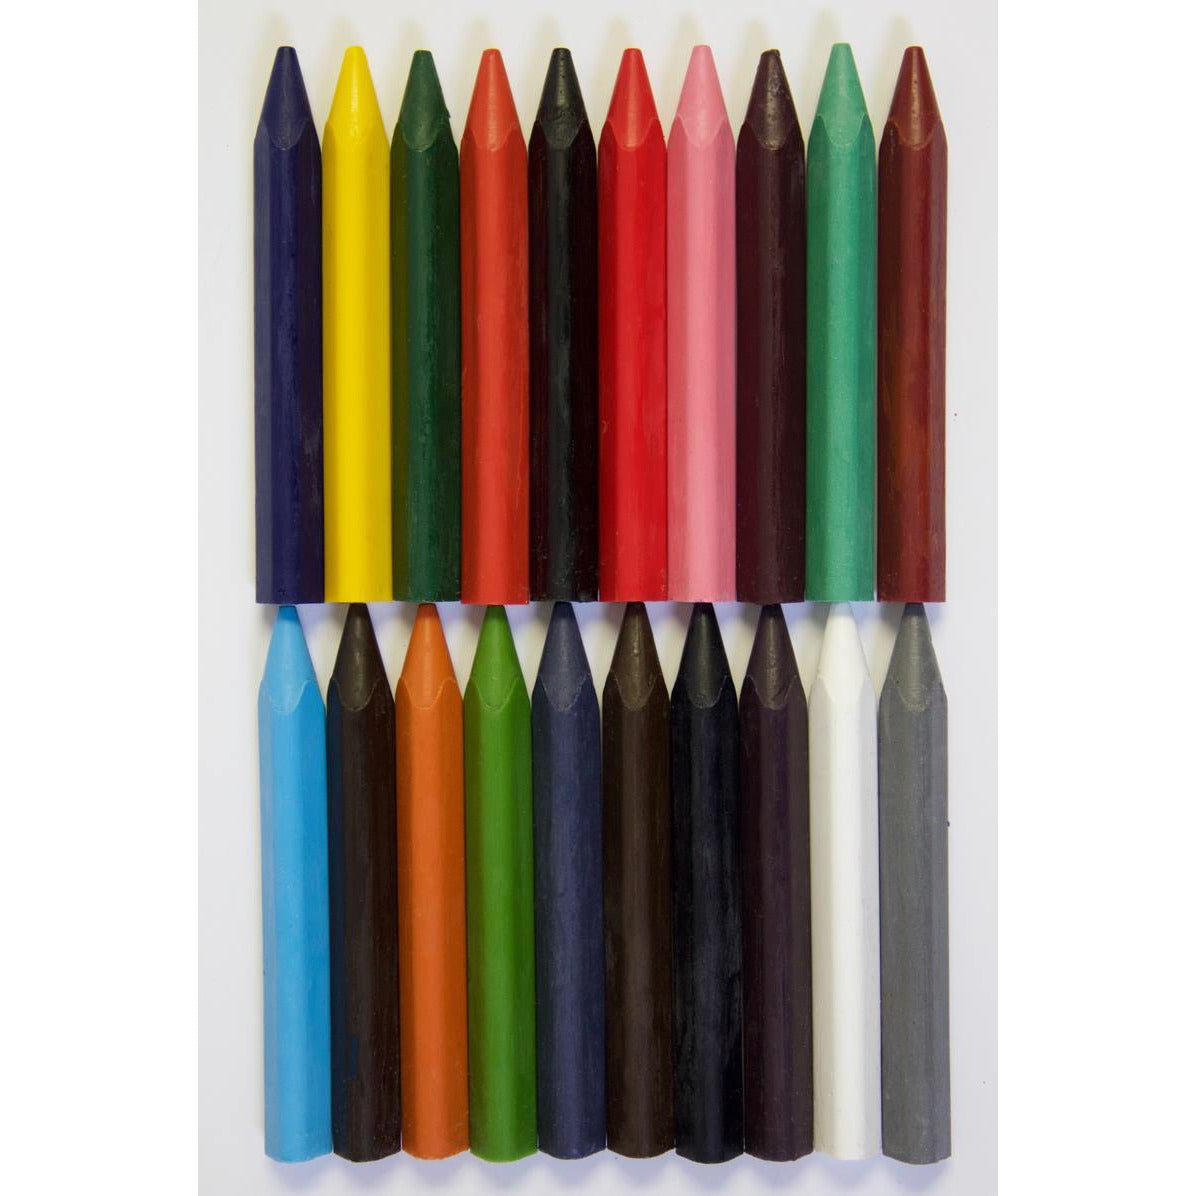 Eco Crayones - Pack de 20 Crayones-Natugo